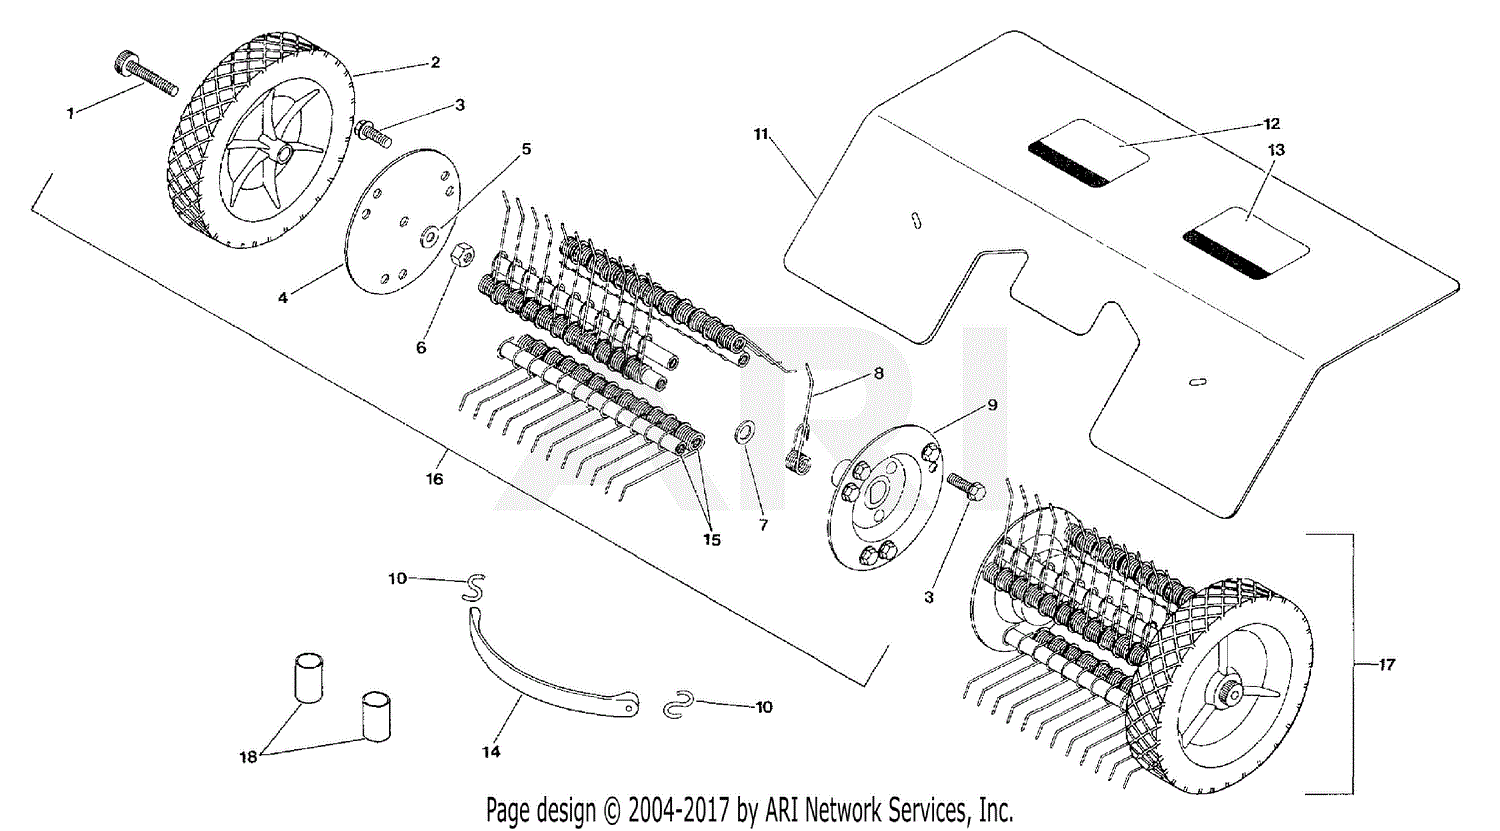 H&s Bifold Rake Parts Diagram